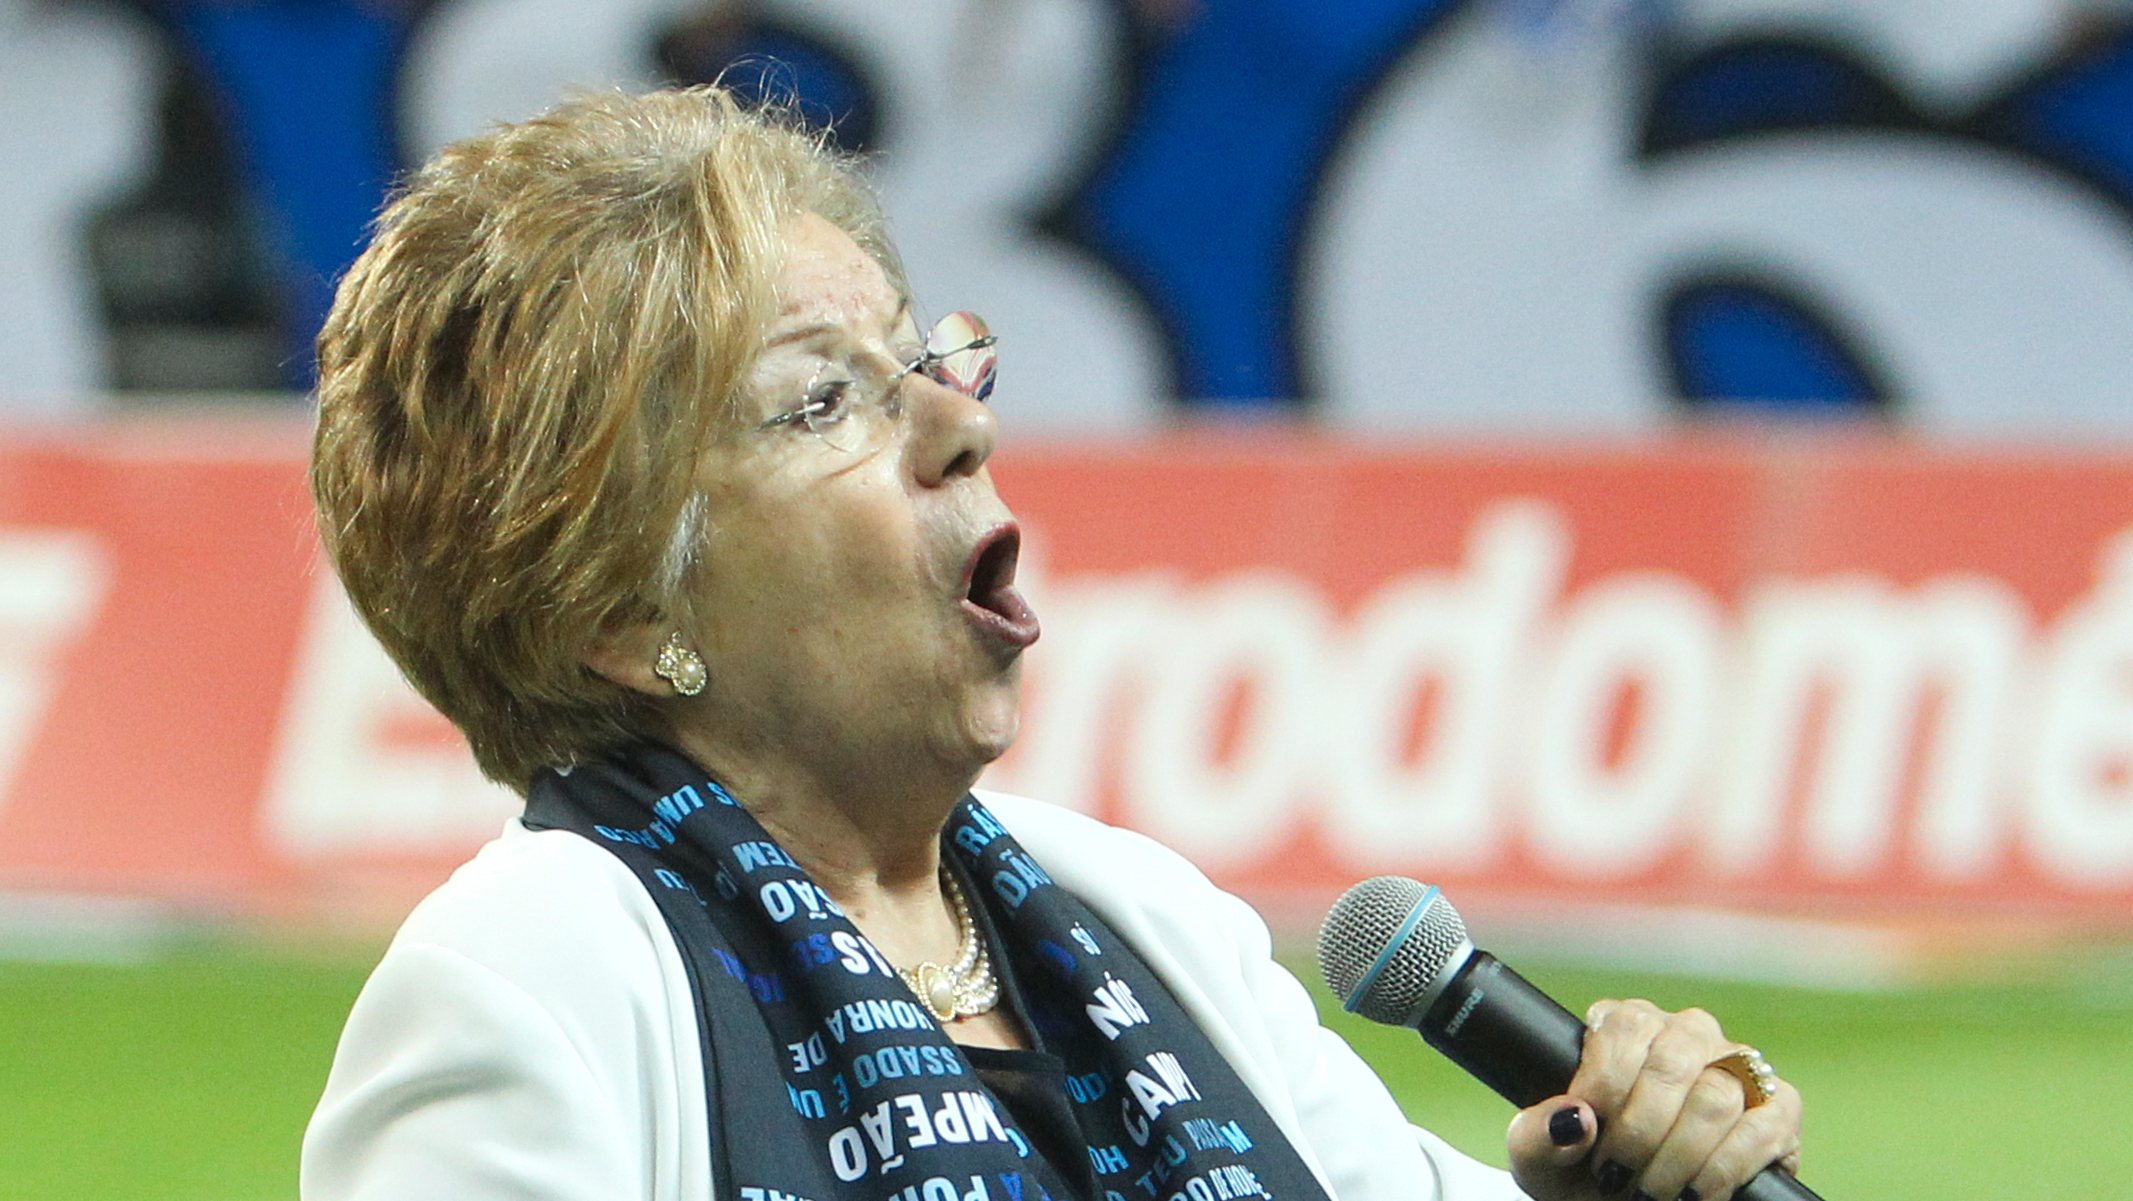 Maria Amélia Canossa numa imagem em 2018 a cantar o hino do clube no Estádio do Dragão